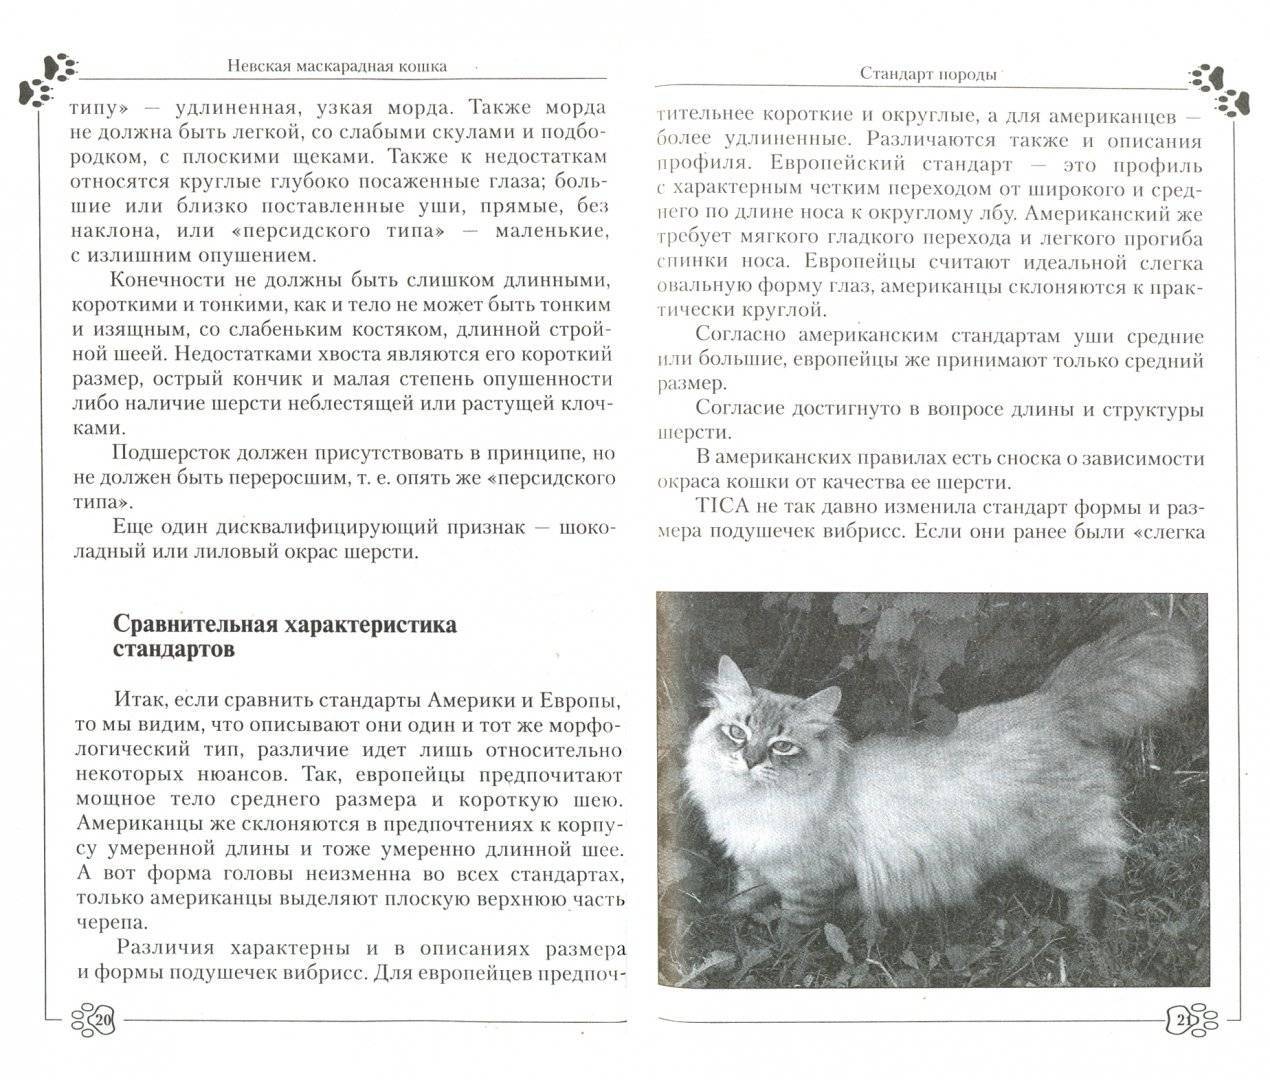 Невская маскарадная кошка, описание породы, характер, окрасы, чем кормить, уход и содержание, фото - zoosecrets